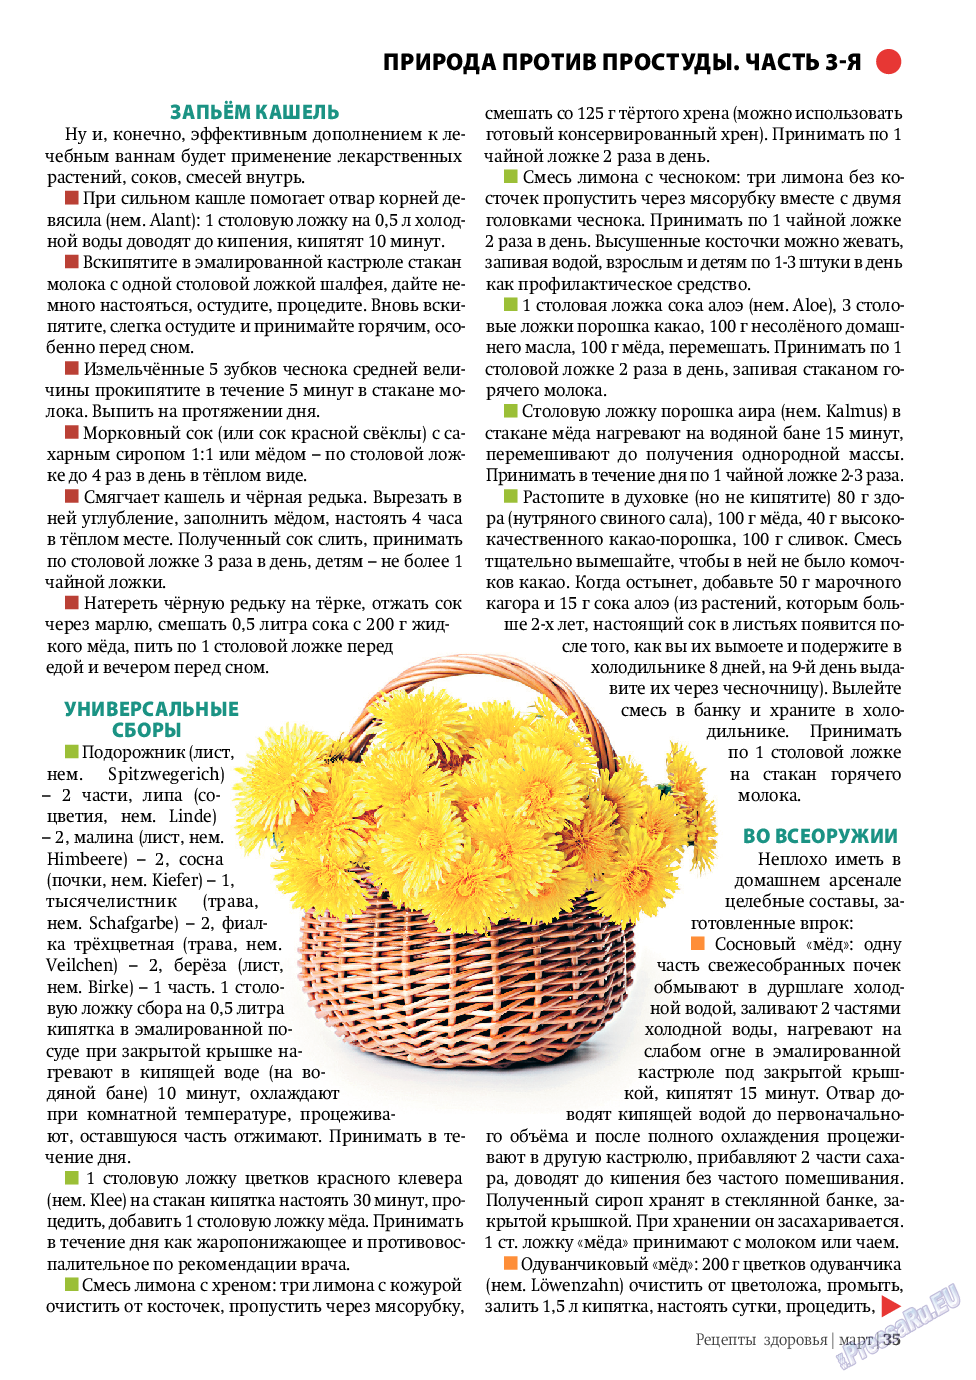 Рецепты здоровья (журнал). 2011 год, номер 3, стр. 35